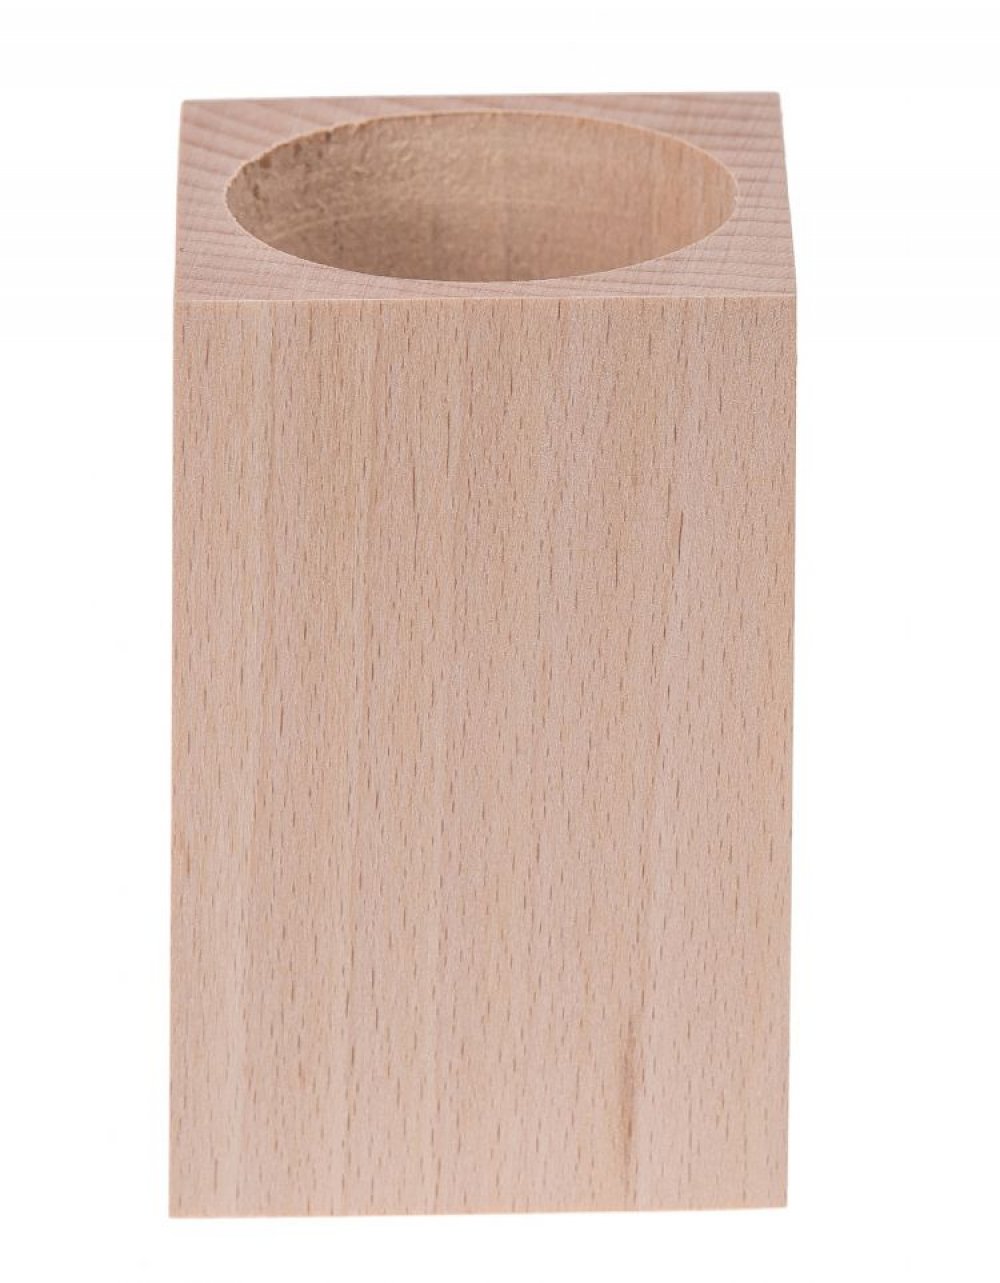 Dřevěný stojánek na tužky 6x6x9 cm